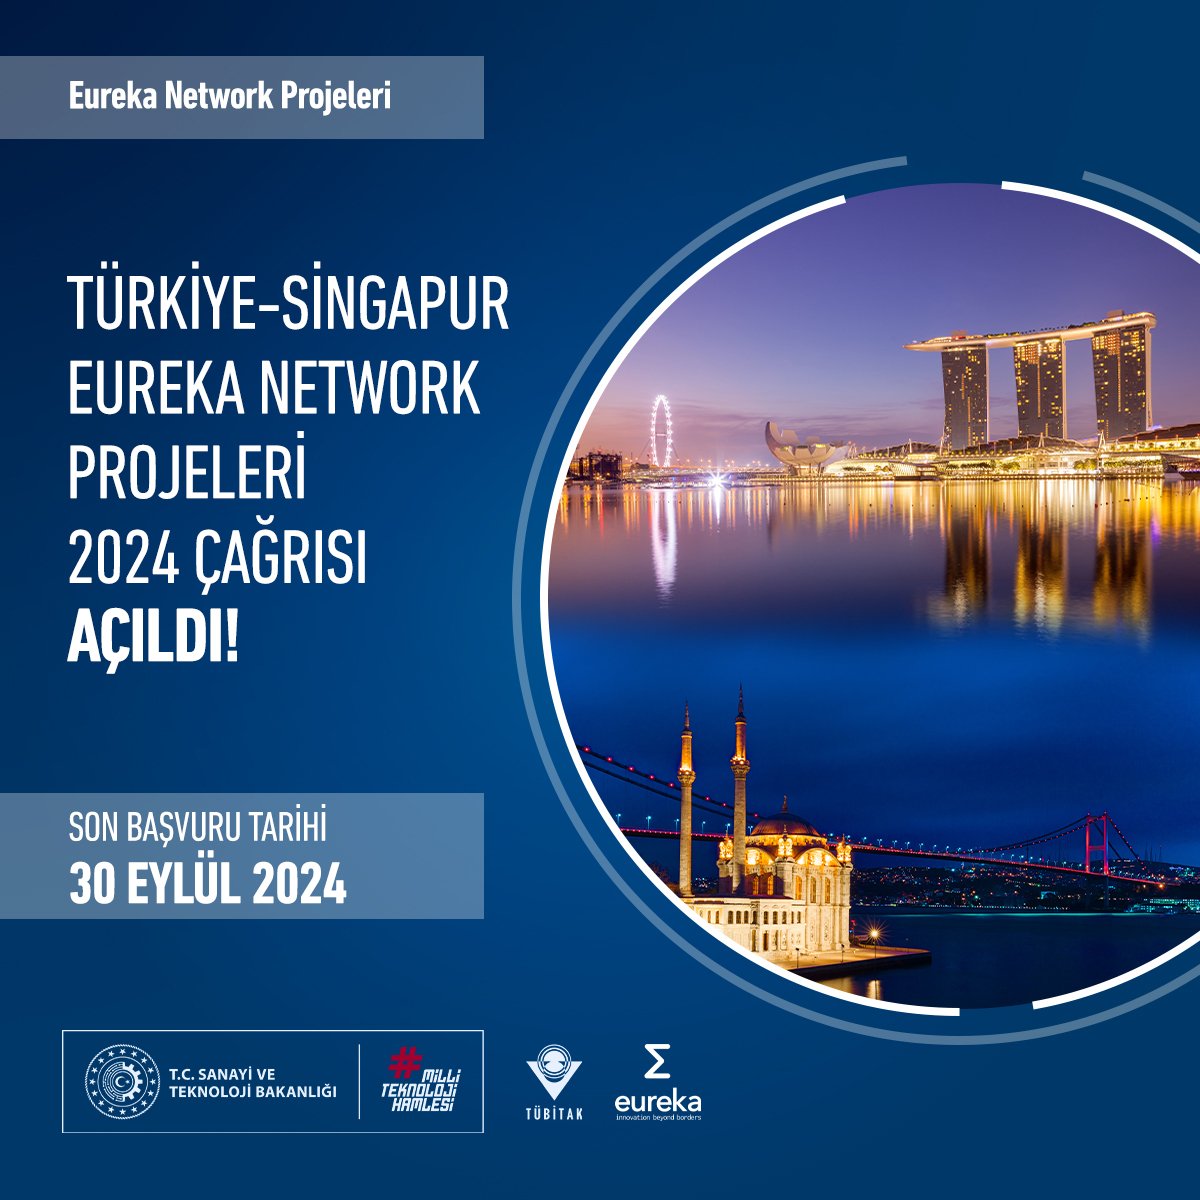 📢 Türkiye-Singapur Eureka Network Projeleri 2024 Çağrısı açıldı! Çağrı kapsamında; ⚙️ Tüm teknoloji ve pazar alanlarında yenilikçi ürün, süreç veya hizmet geliştirilmesine odaklanan, 💼 Güçlü pazar potansiyeline sahip ve aynı zamanda pazar için çözümler üretmeyi hedefleyen,